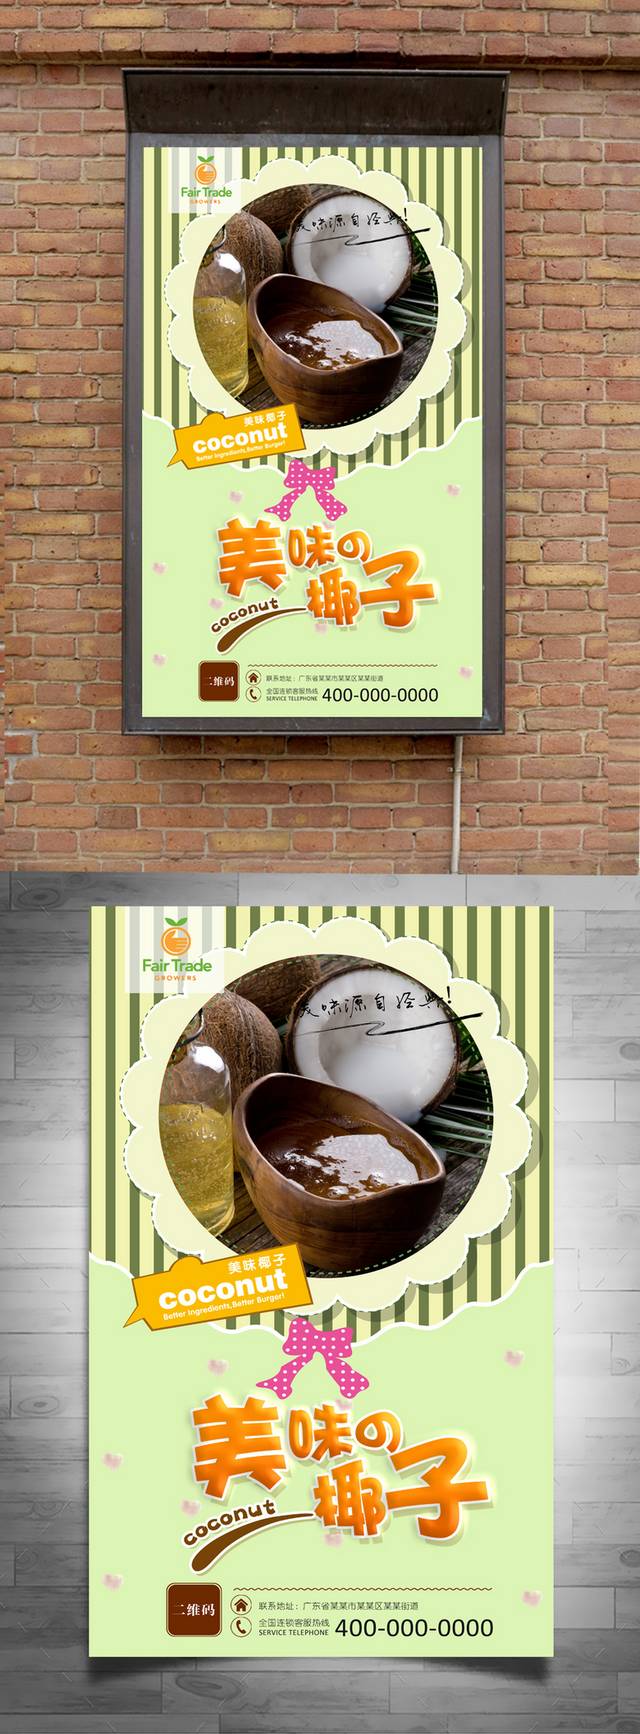 精品椰子宣传海报设计